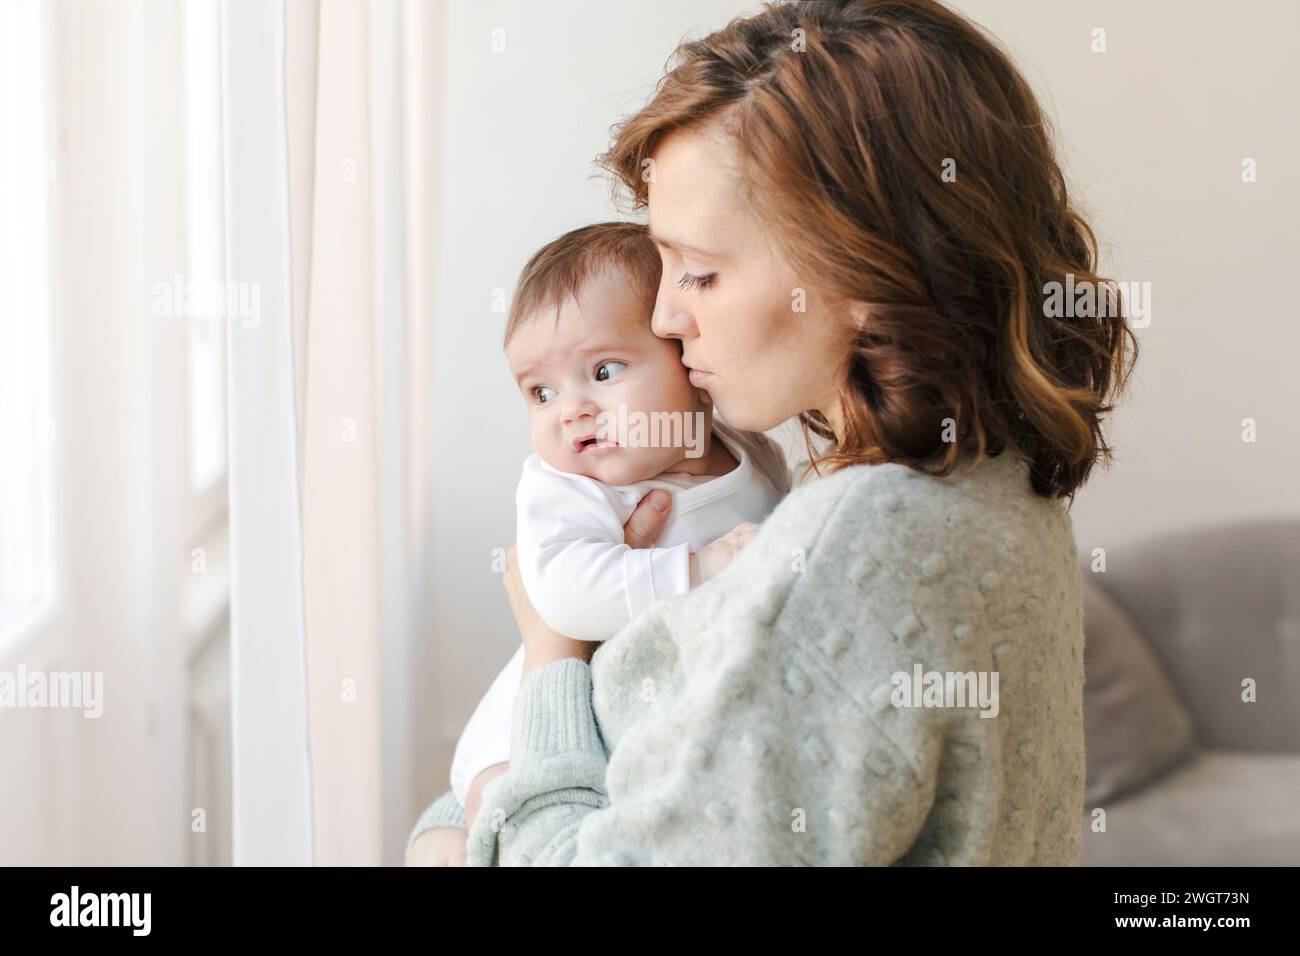 Vue latérale de la jeune mère attentionnée en pull tenant et embrassant adorable petit bébé tout en se tenant près de la fenêtre à la maison. Femme aimante avec bébé spen Banque D'Images